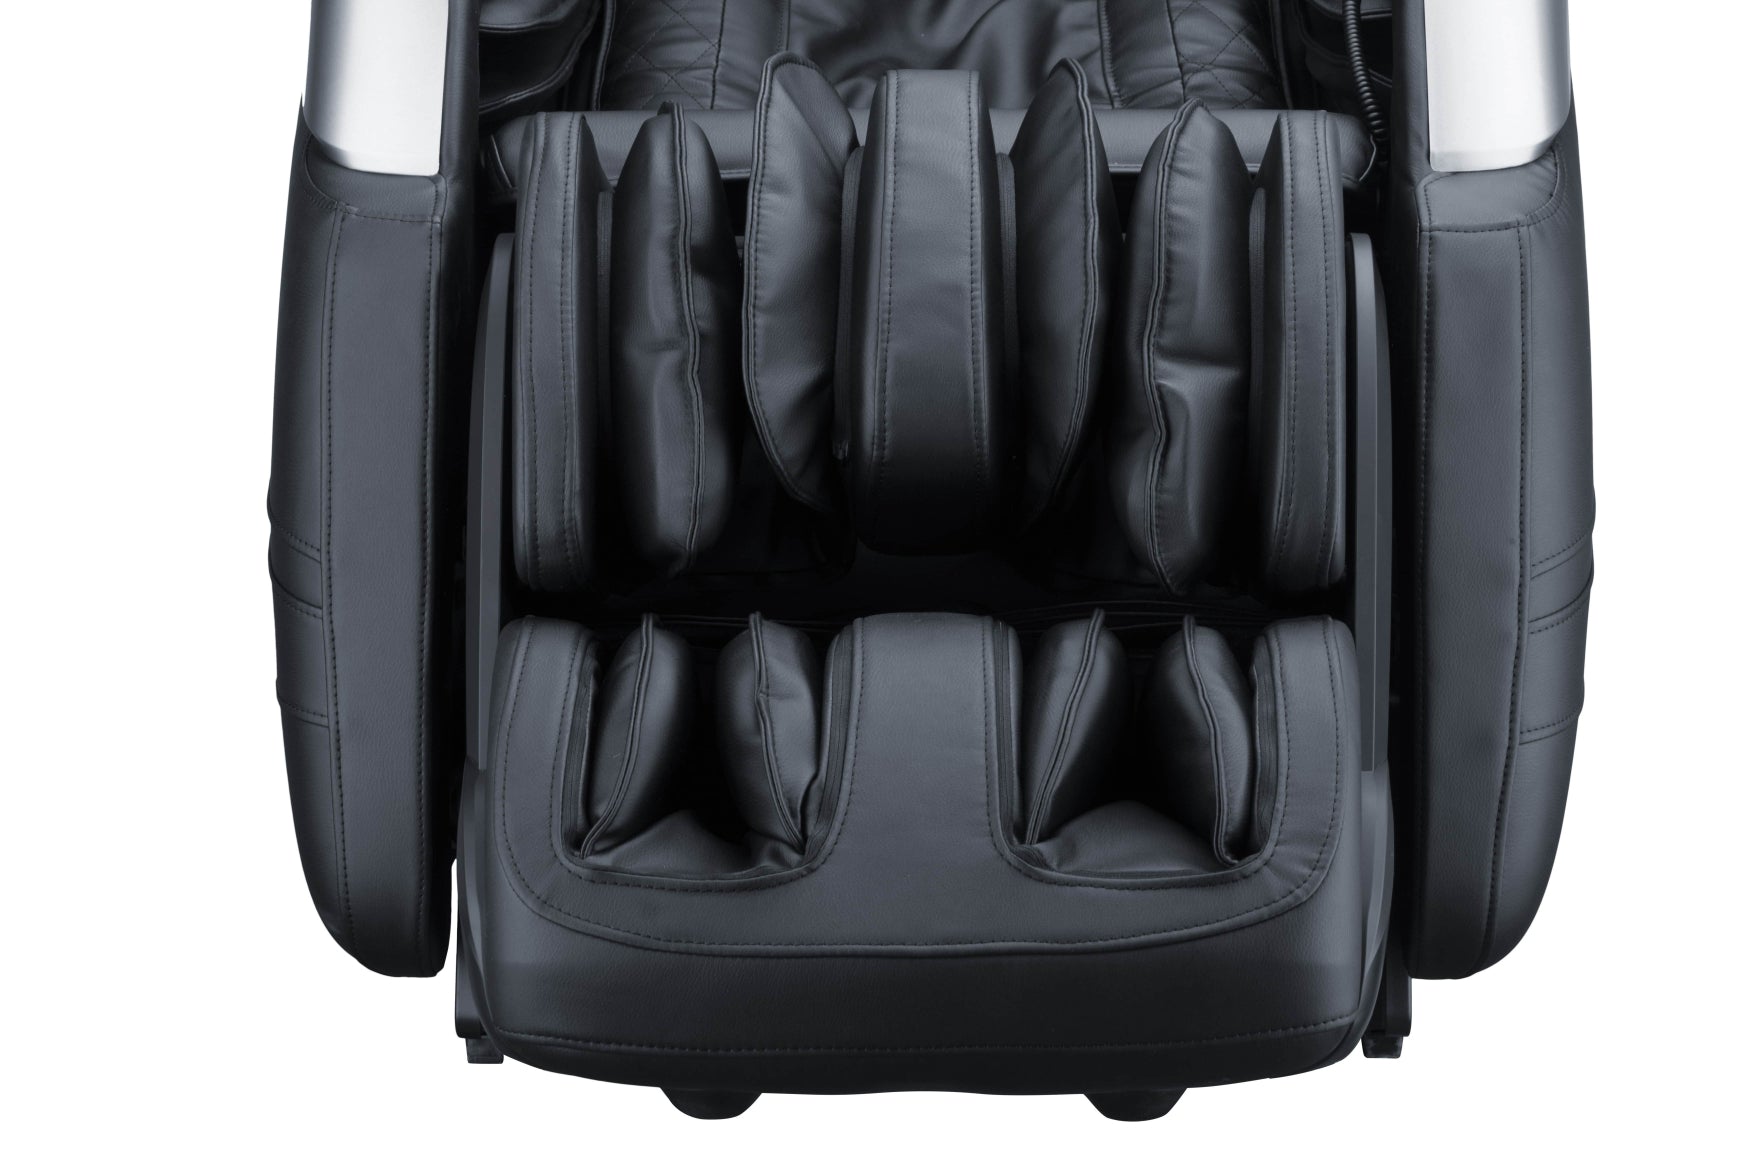 IBM-P03 Ultimate 4D Zero-G Massage Chair (3 Colors)